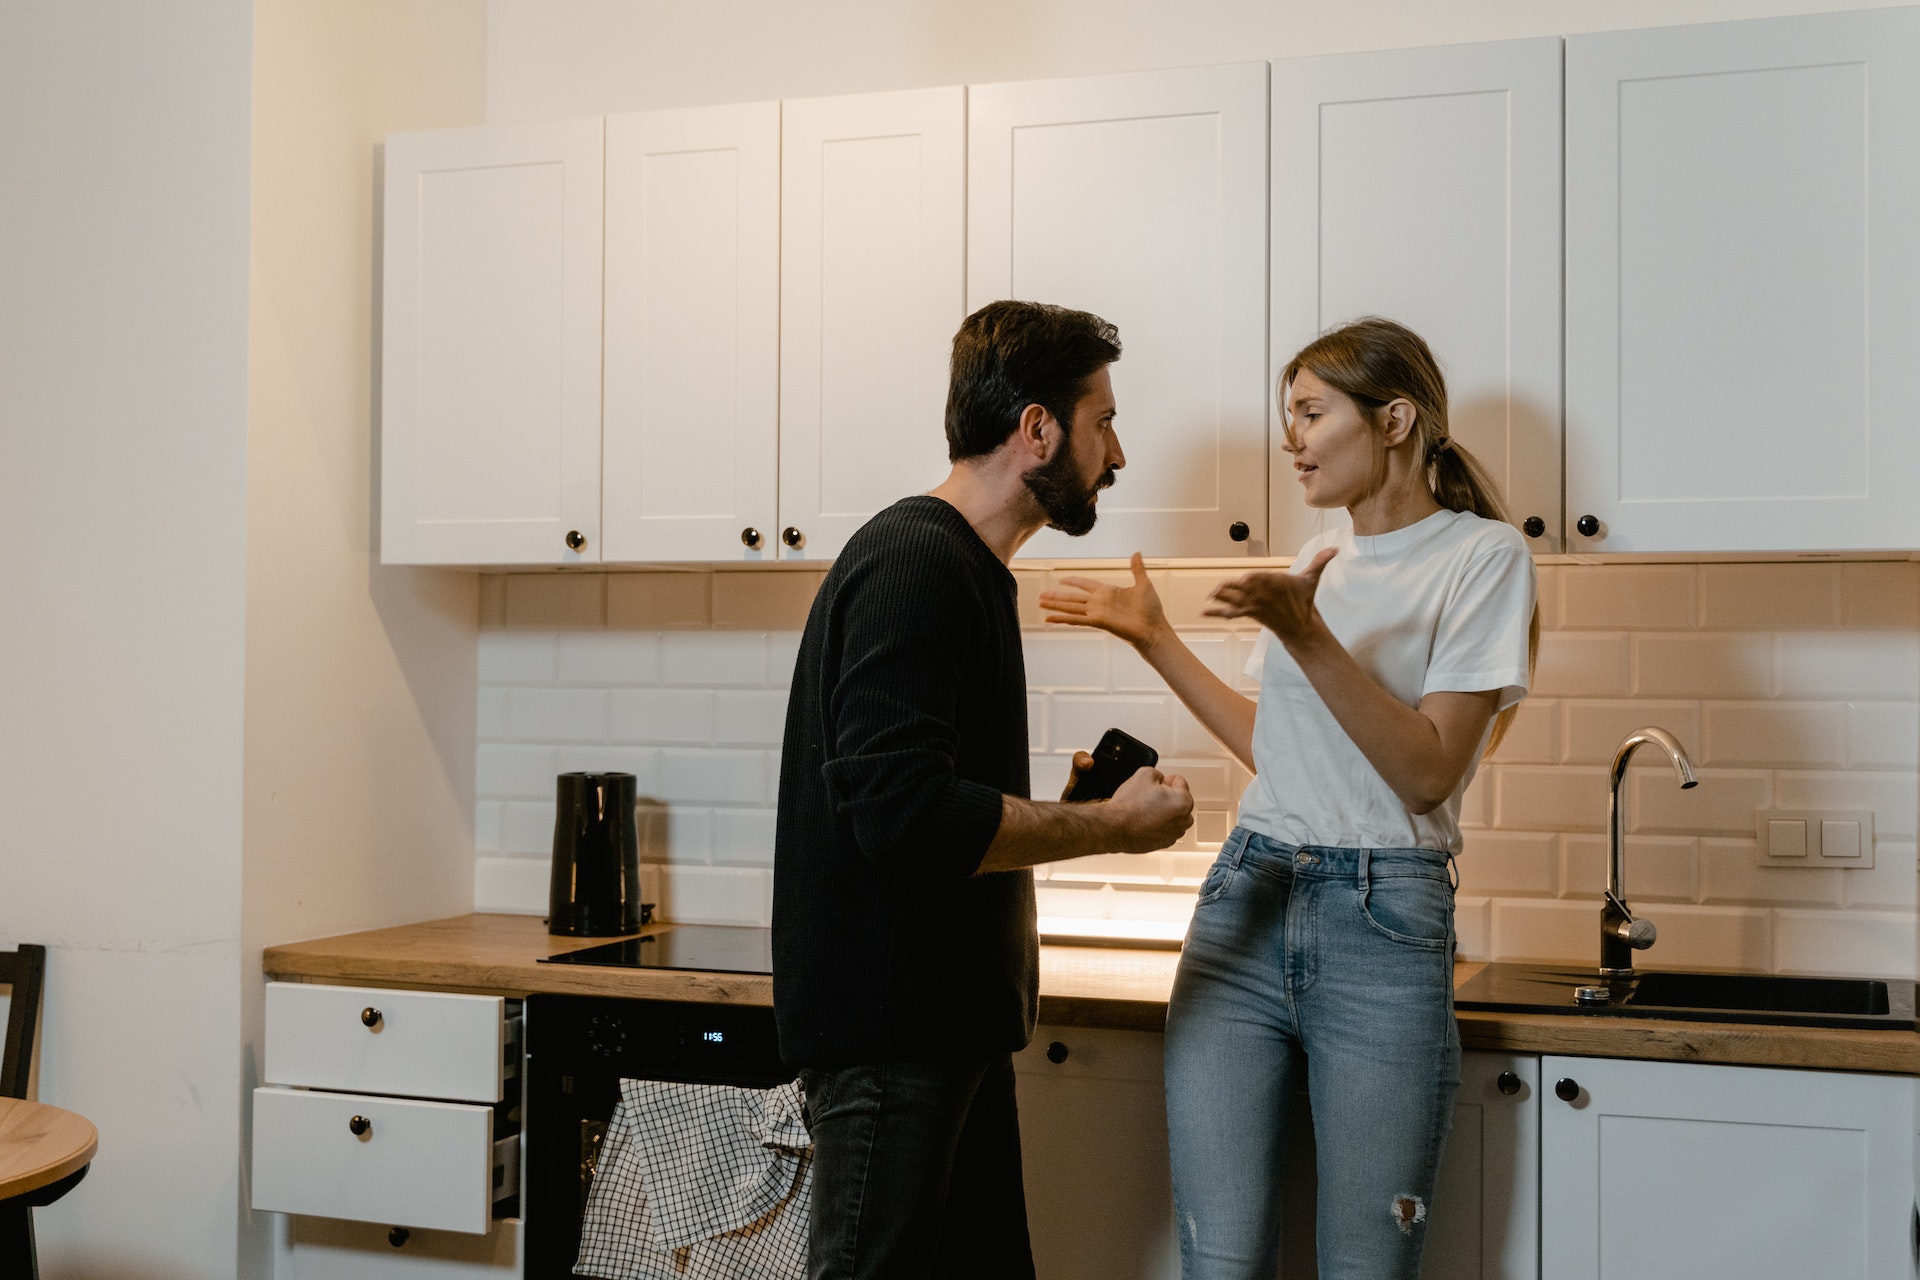 Un couple discute de quelque chose dans la cuisine | Source : Pexels